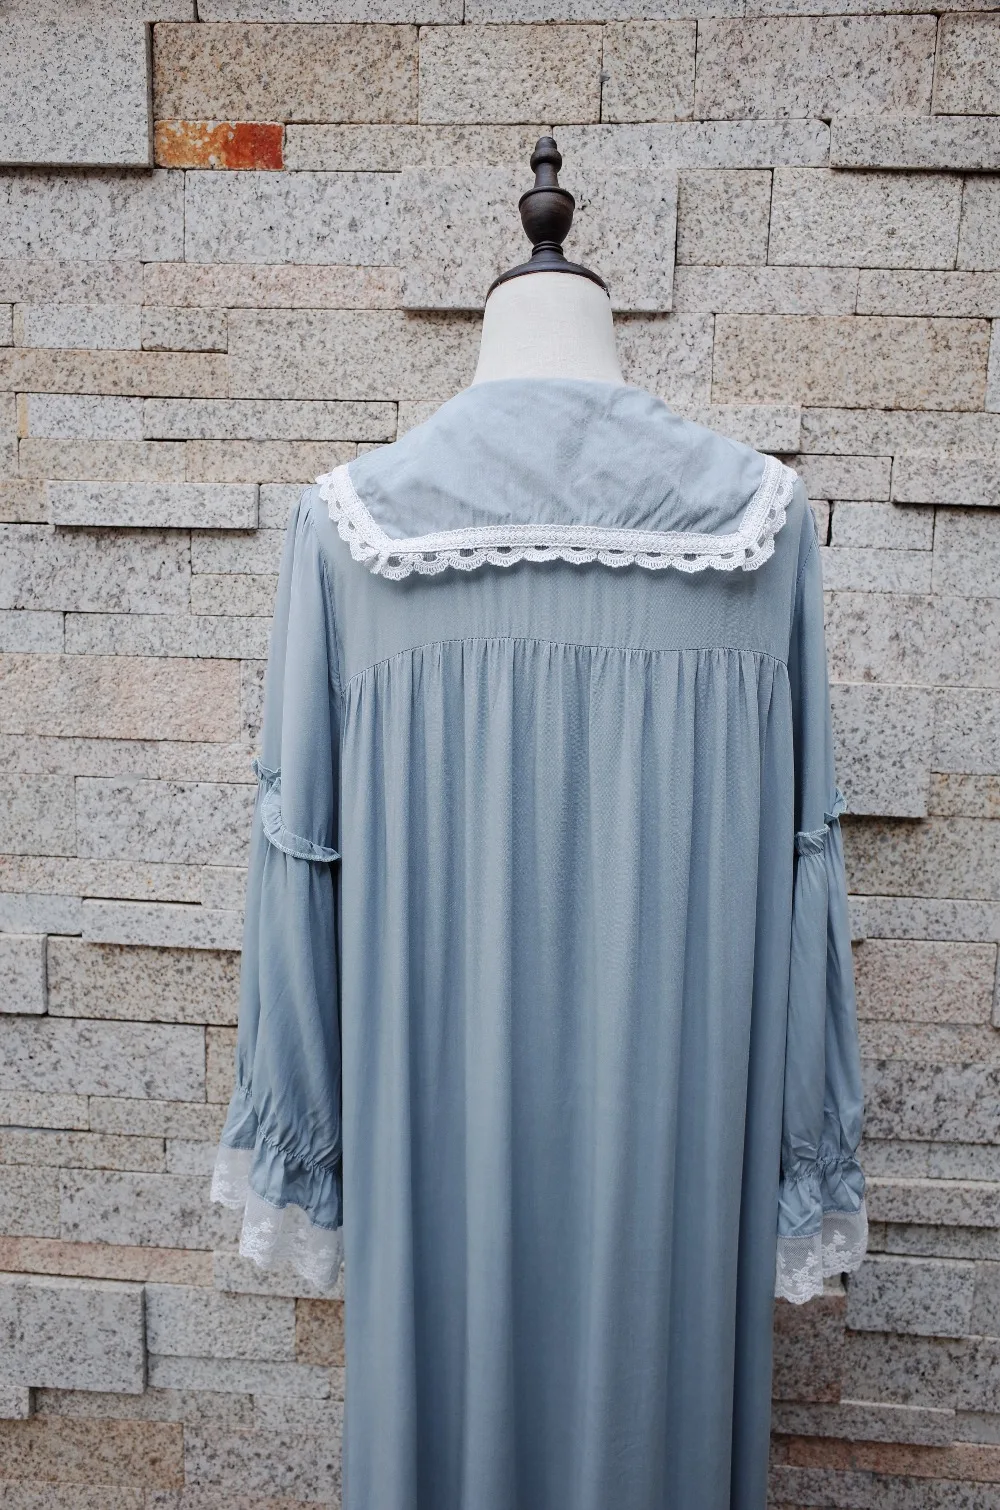 Осень пижамы Для женщин Винтаж ночная рубашка с длинными рукавами и отложным воротником пуговицы спереди рюшами ночной платье плюс